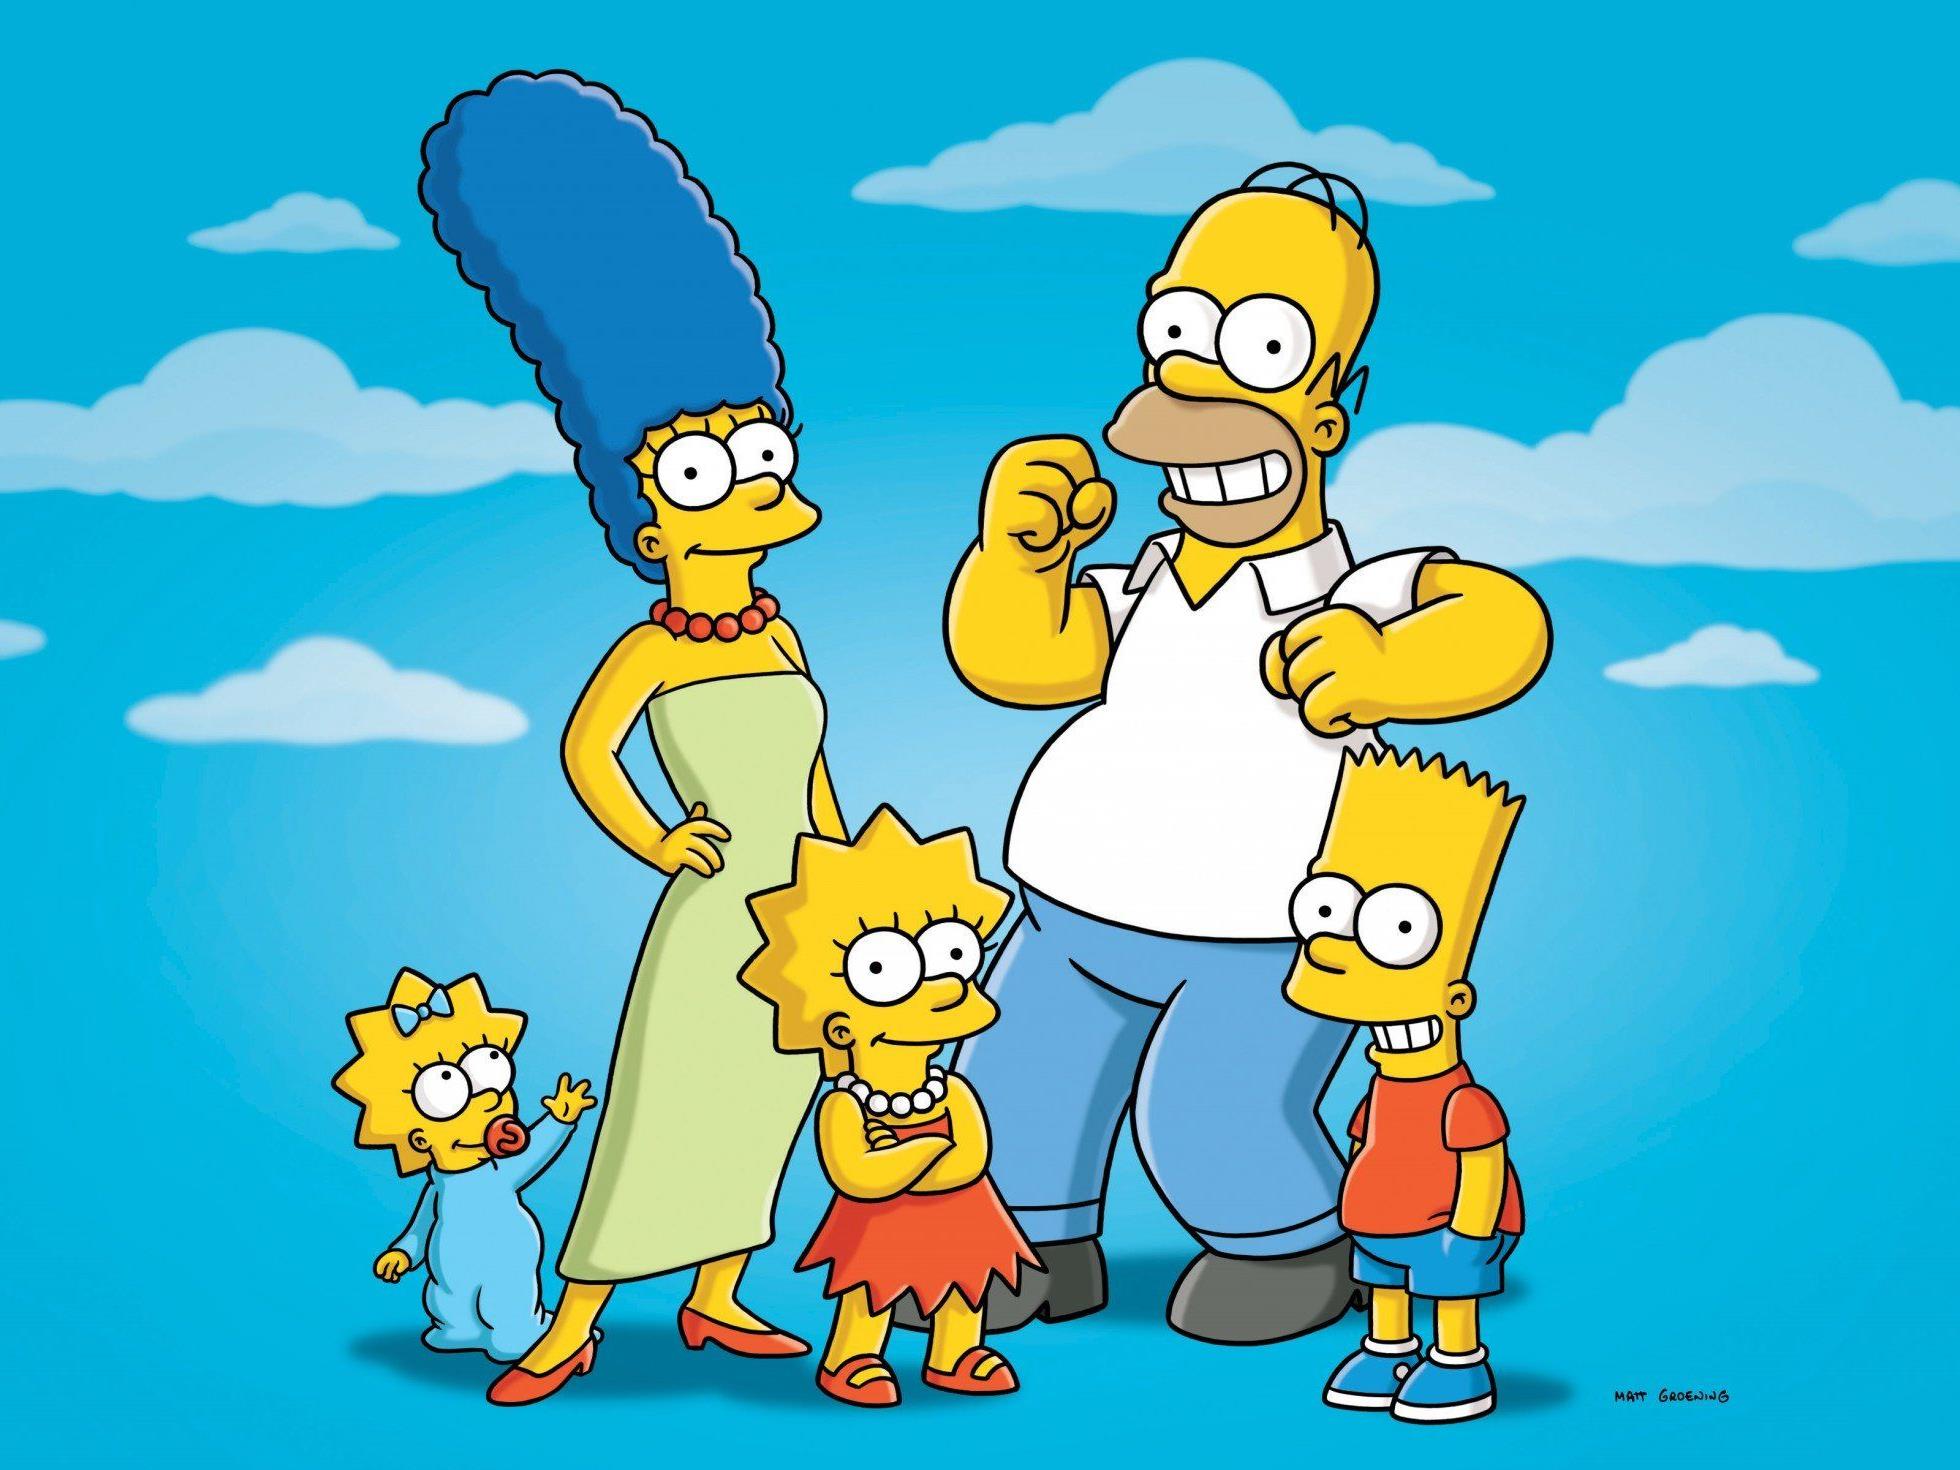 Geschichtsforscher untersuchte Darstellung von Homosexualität in der Kult-Serie "The Simpsons"